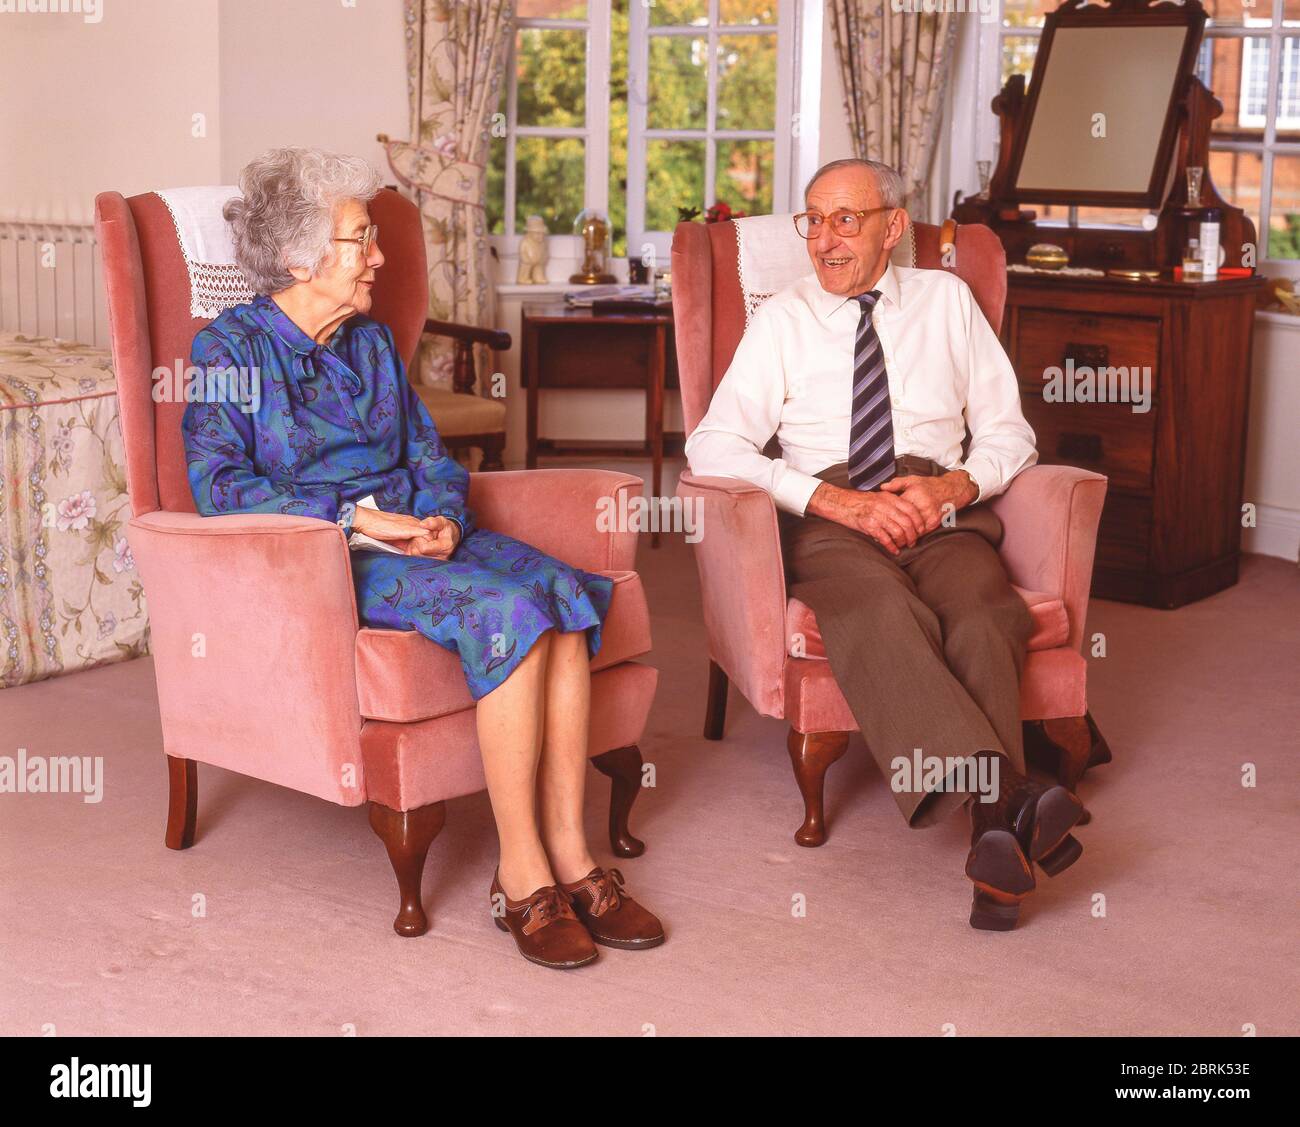 Ältere Frau und Mann, die im Pflegeheim, Surrey, England, Großbritannien, plaudern Stockfoto